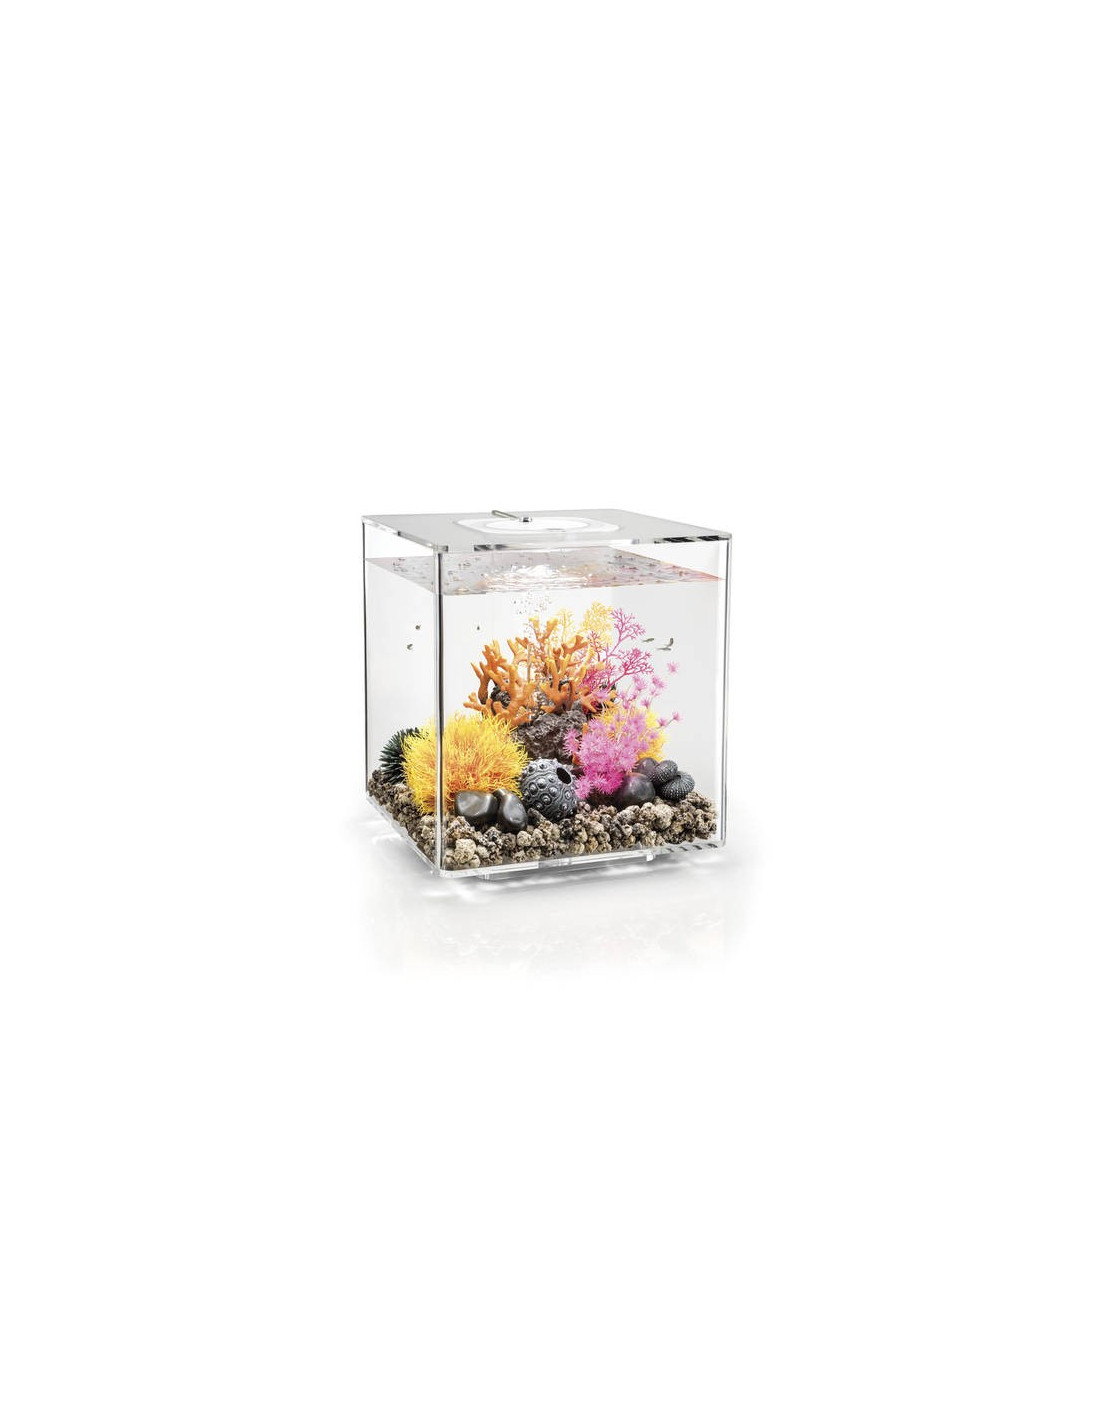 Aquarium biOrb Cube 30 MCR  transparent